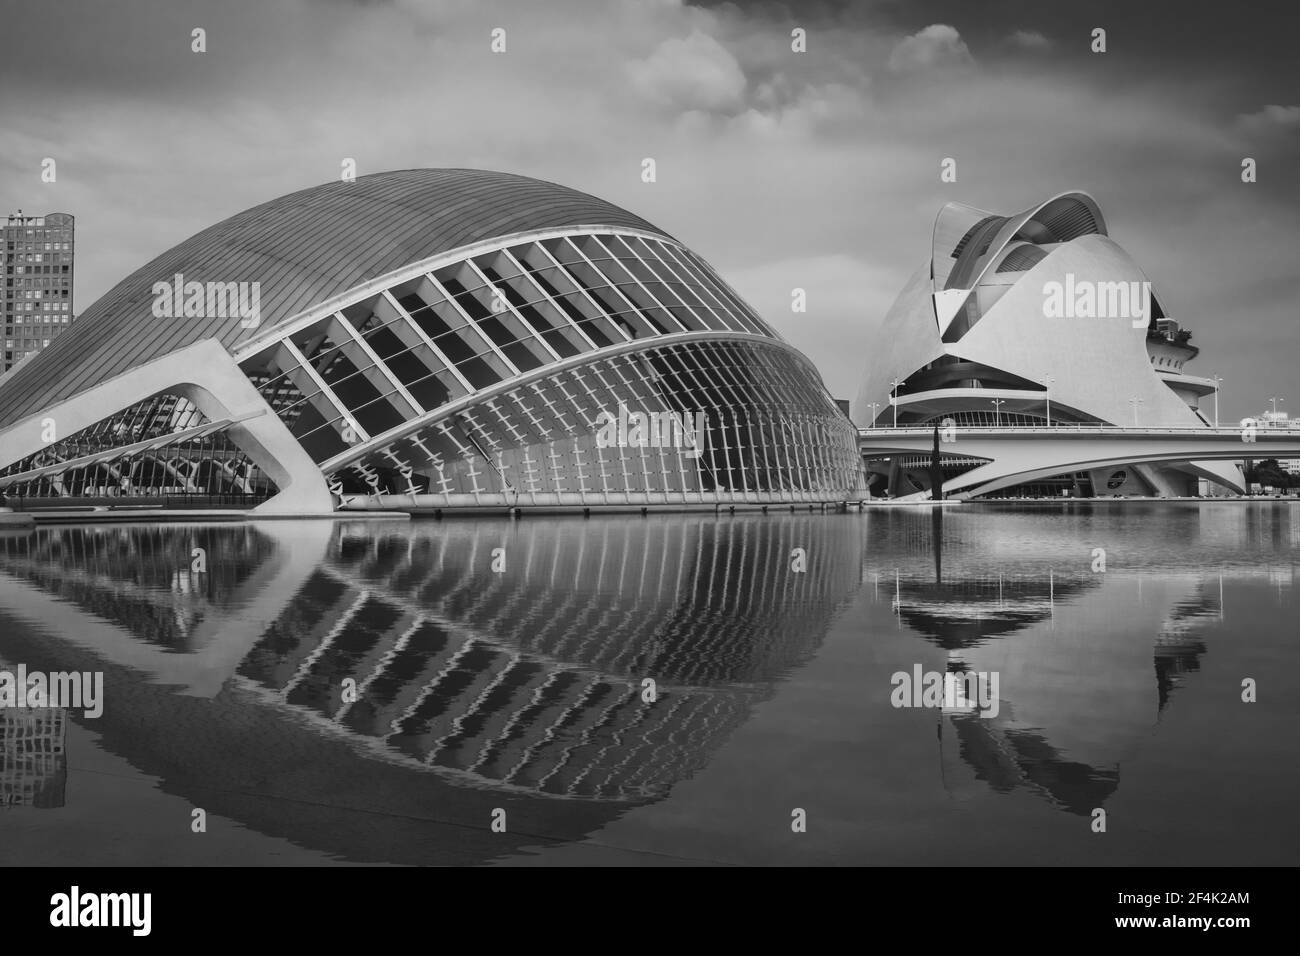 Vista della Città delle Arti e delle Scienze situata a Valencia, Spagna. Due dei suoi edifici futuristici: l'Hemisferic e Palau de les Arts (Teatro dell'Opera). Foto Stock